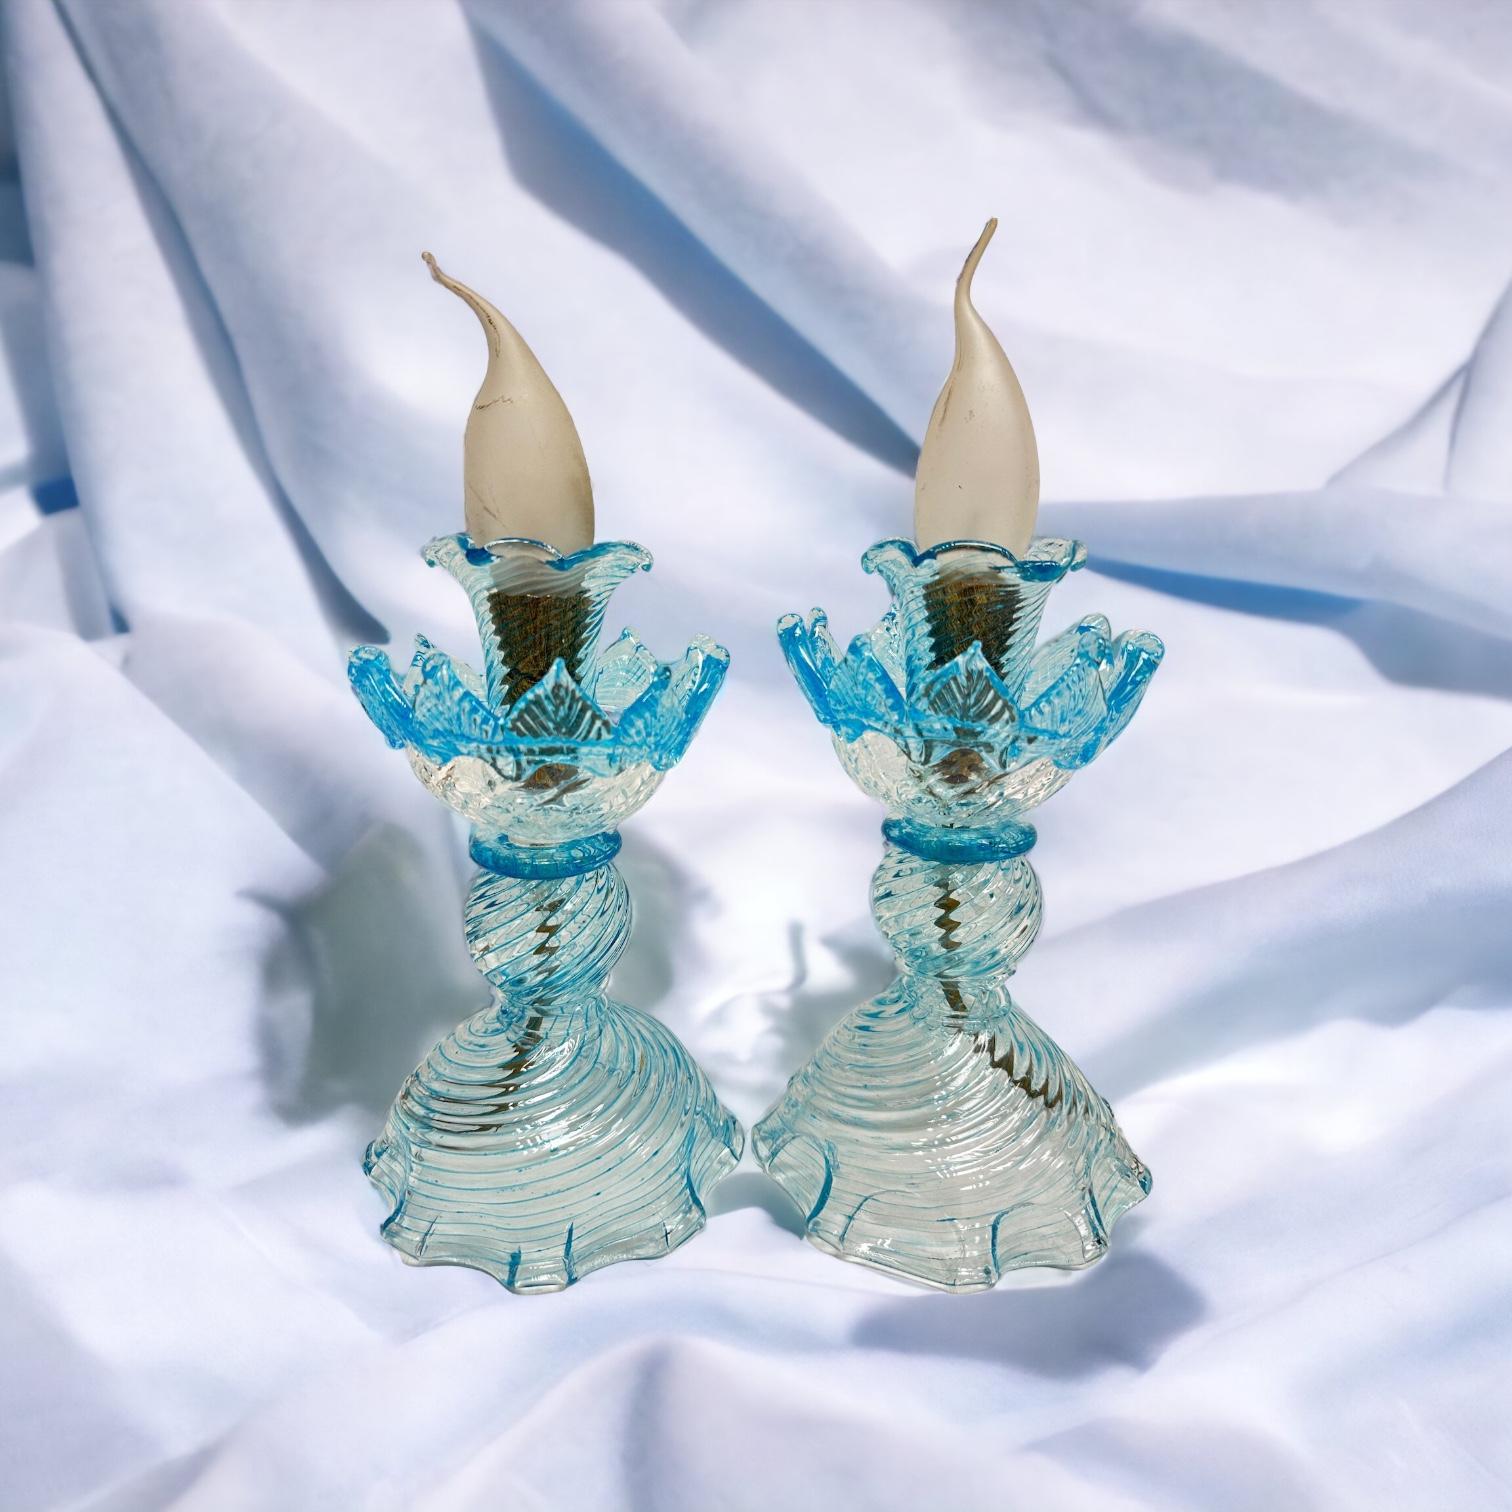 Wunderschönes Paar zierlicher Tischlampen oder Nachttischlampen. Aus klarem Murano-Glas mit hellblauem Rand, hergestellt von einer Murano-Glasfirma in Venedig, Italien. Jede Leuchte benötigt eine europäische E14 / 110 Volt Candelabra-Glühbirne, bis